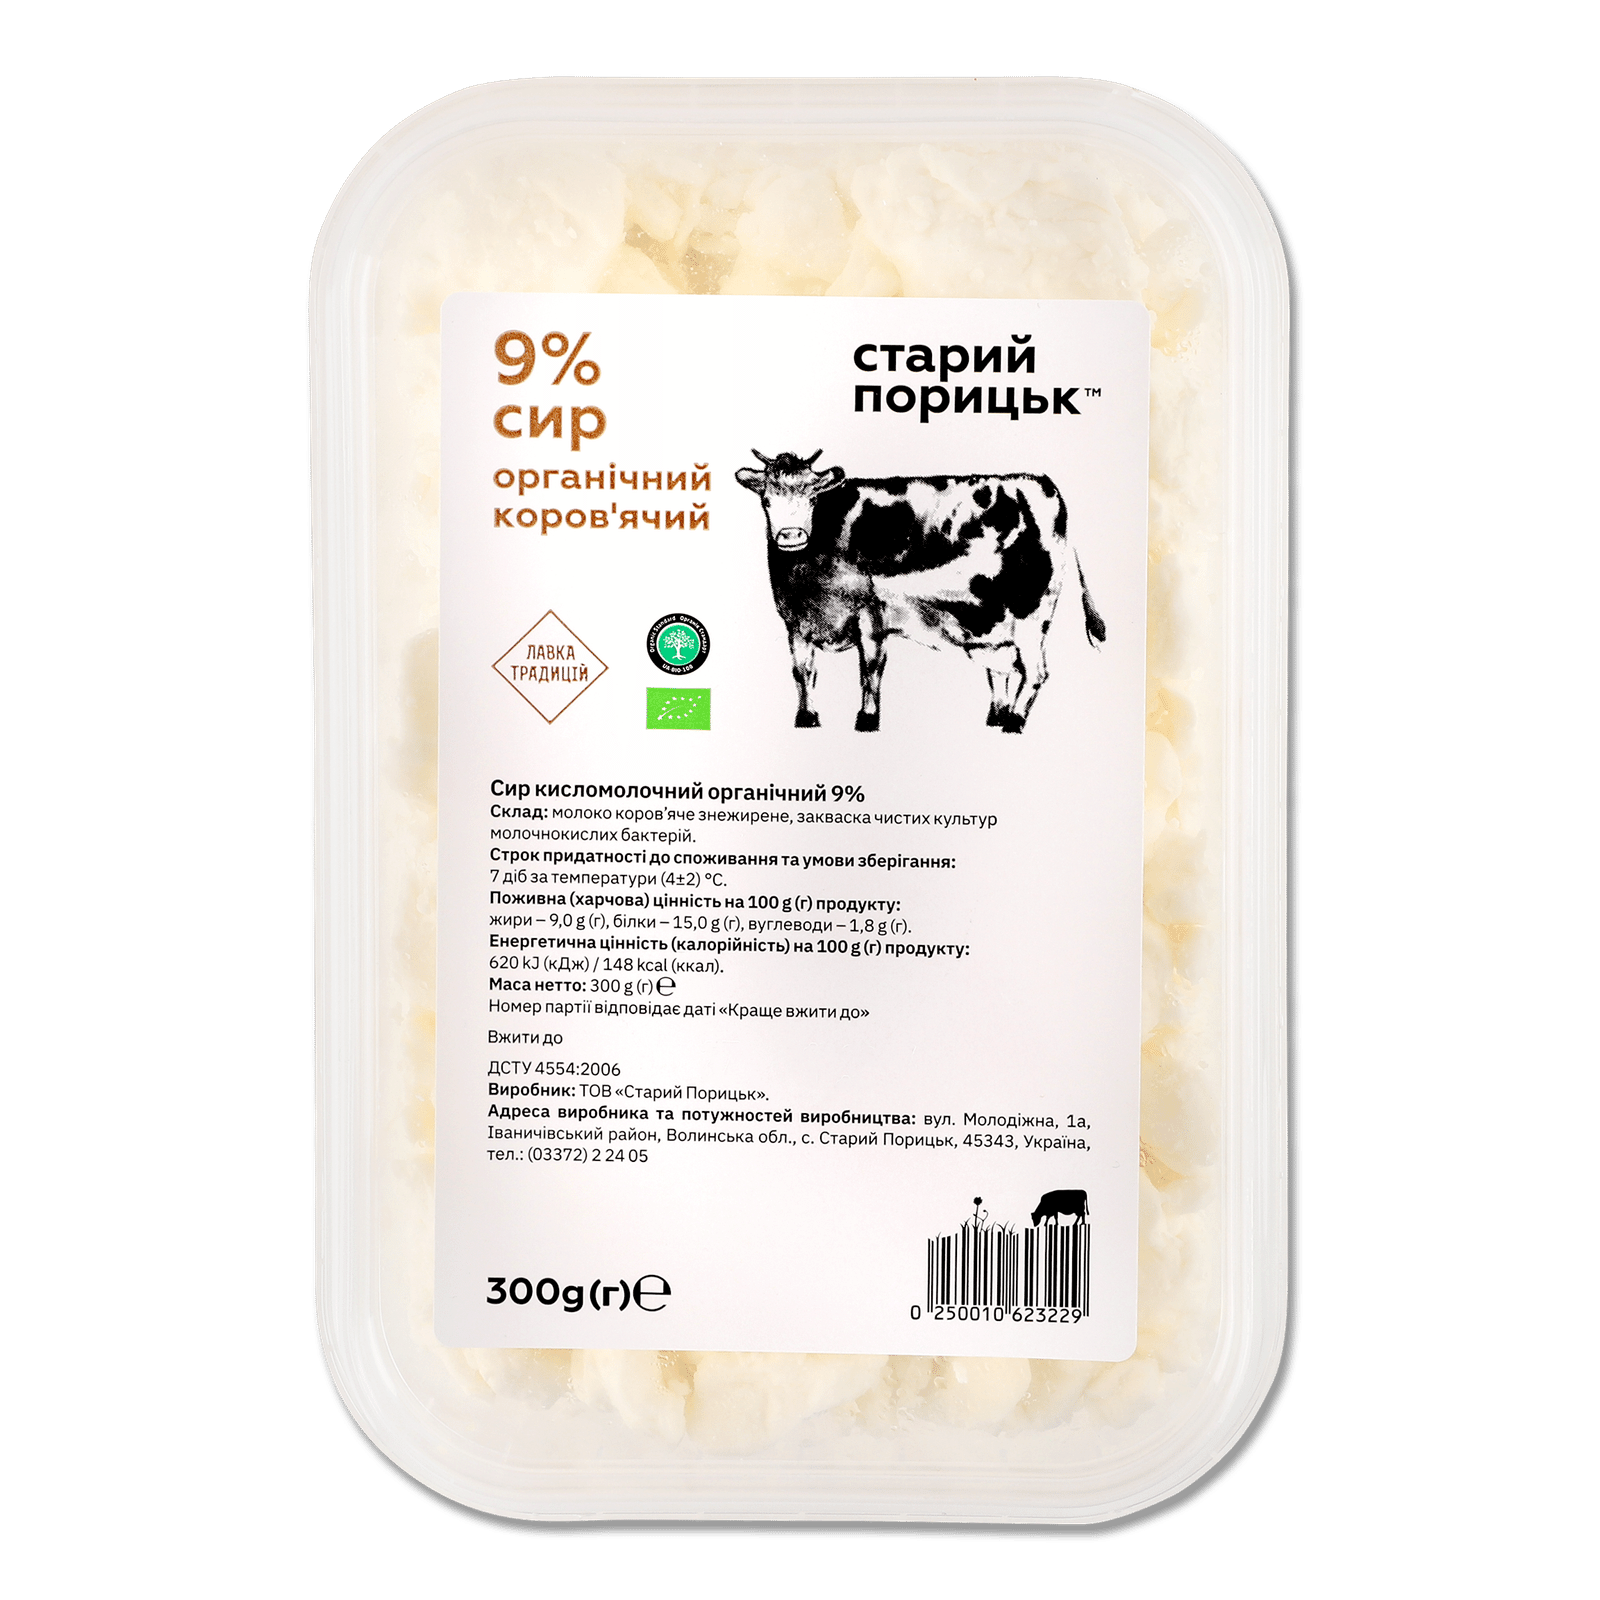 Сир кисломолочний «Лавка традицій» «Старий Порицьк» органічний 9% - 1